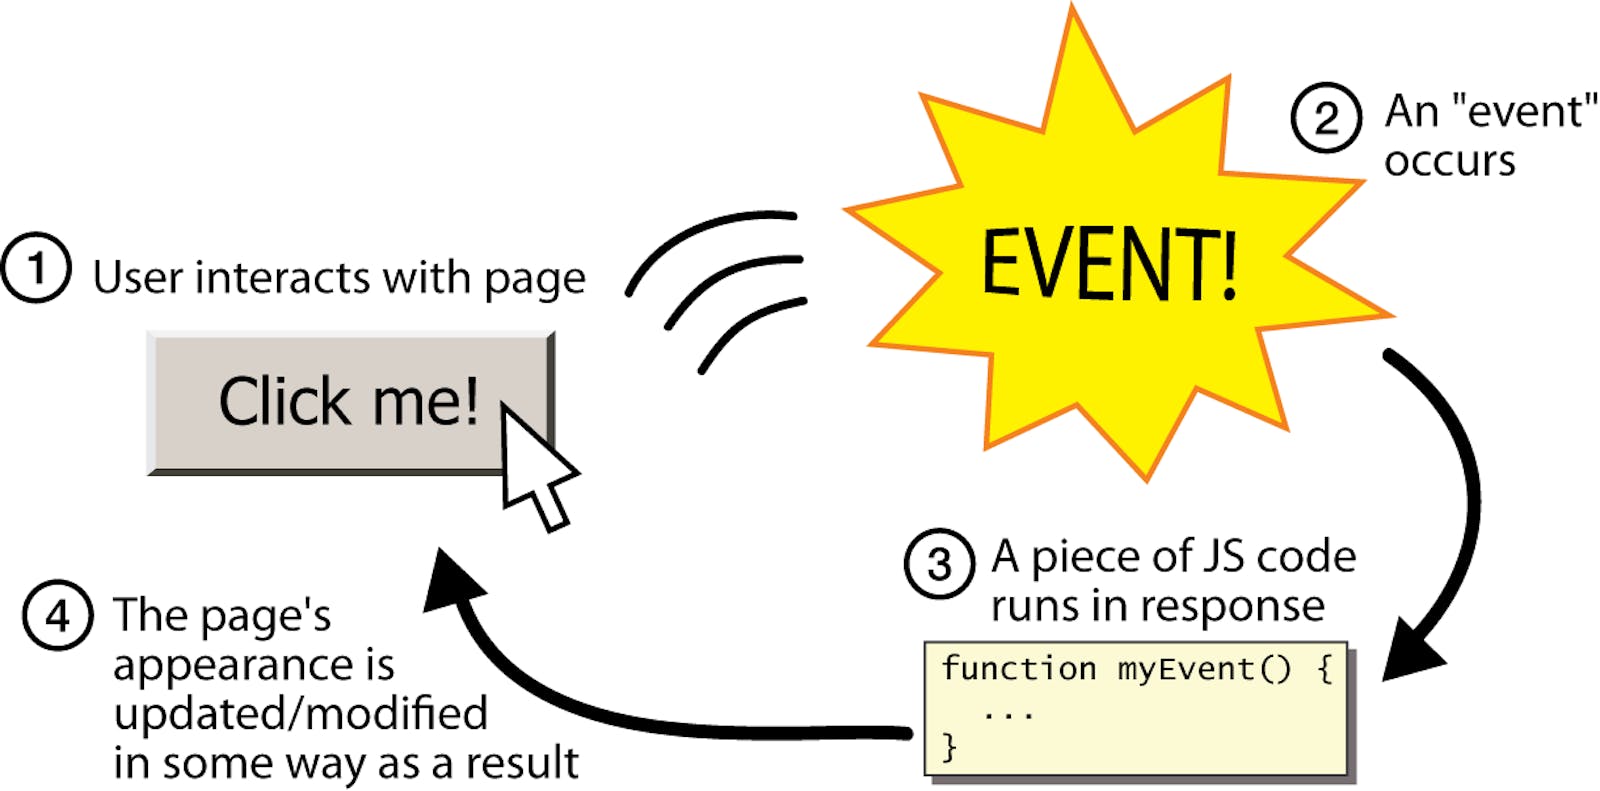 JavaScript Events